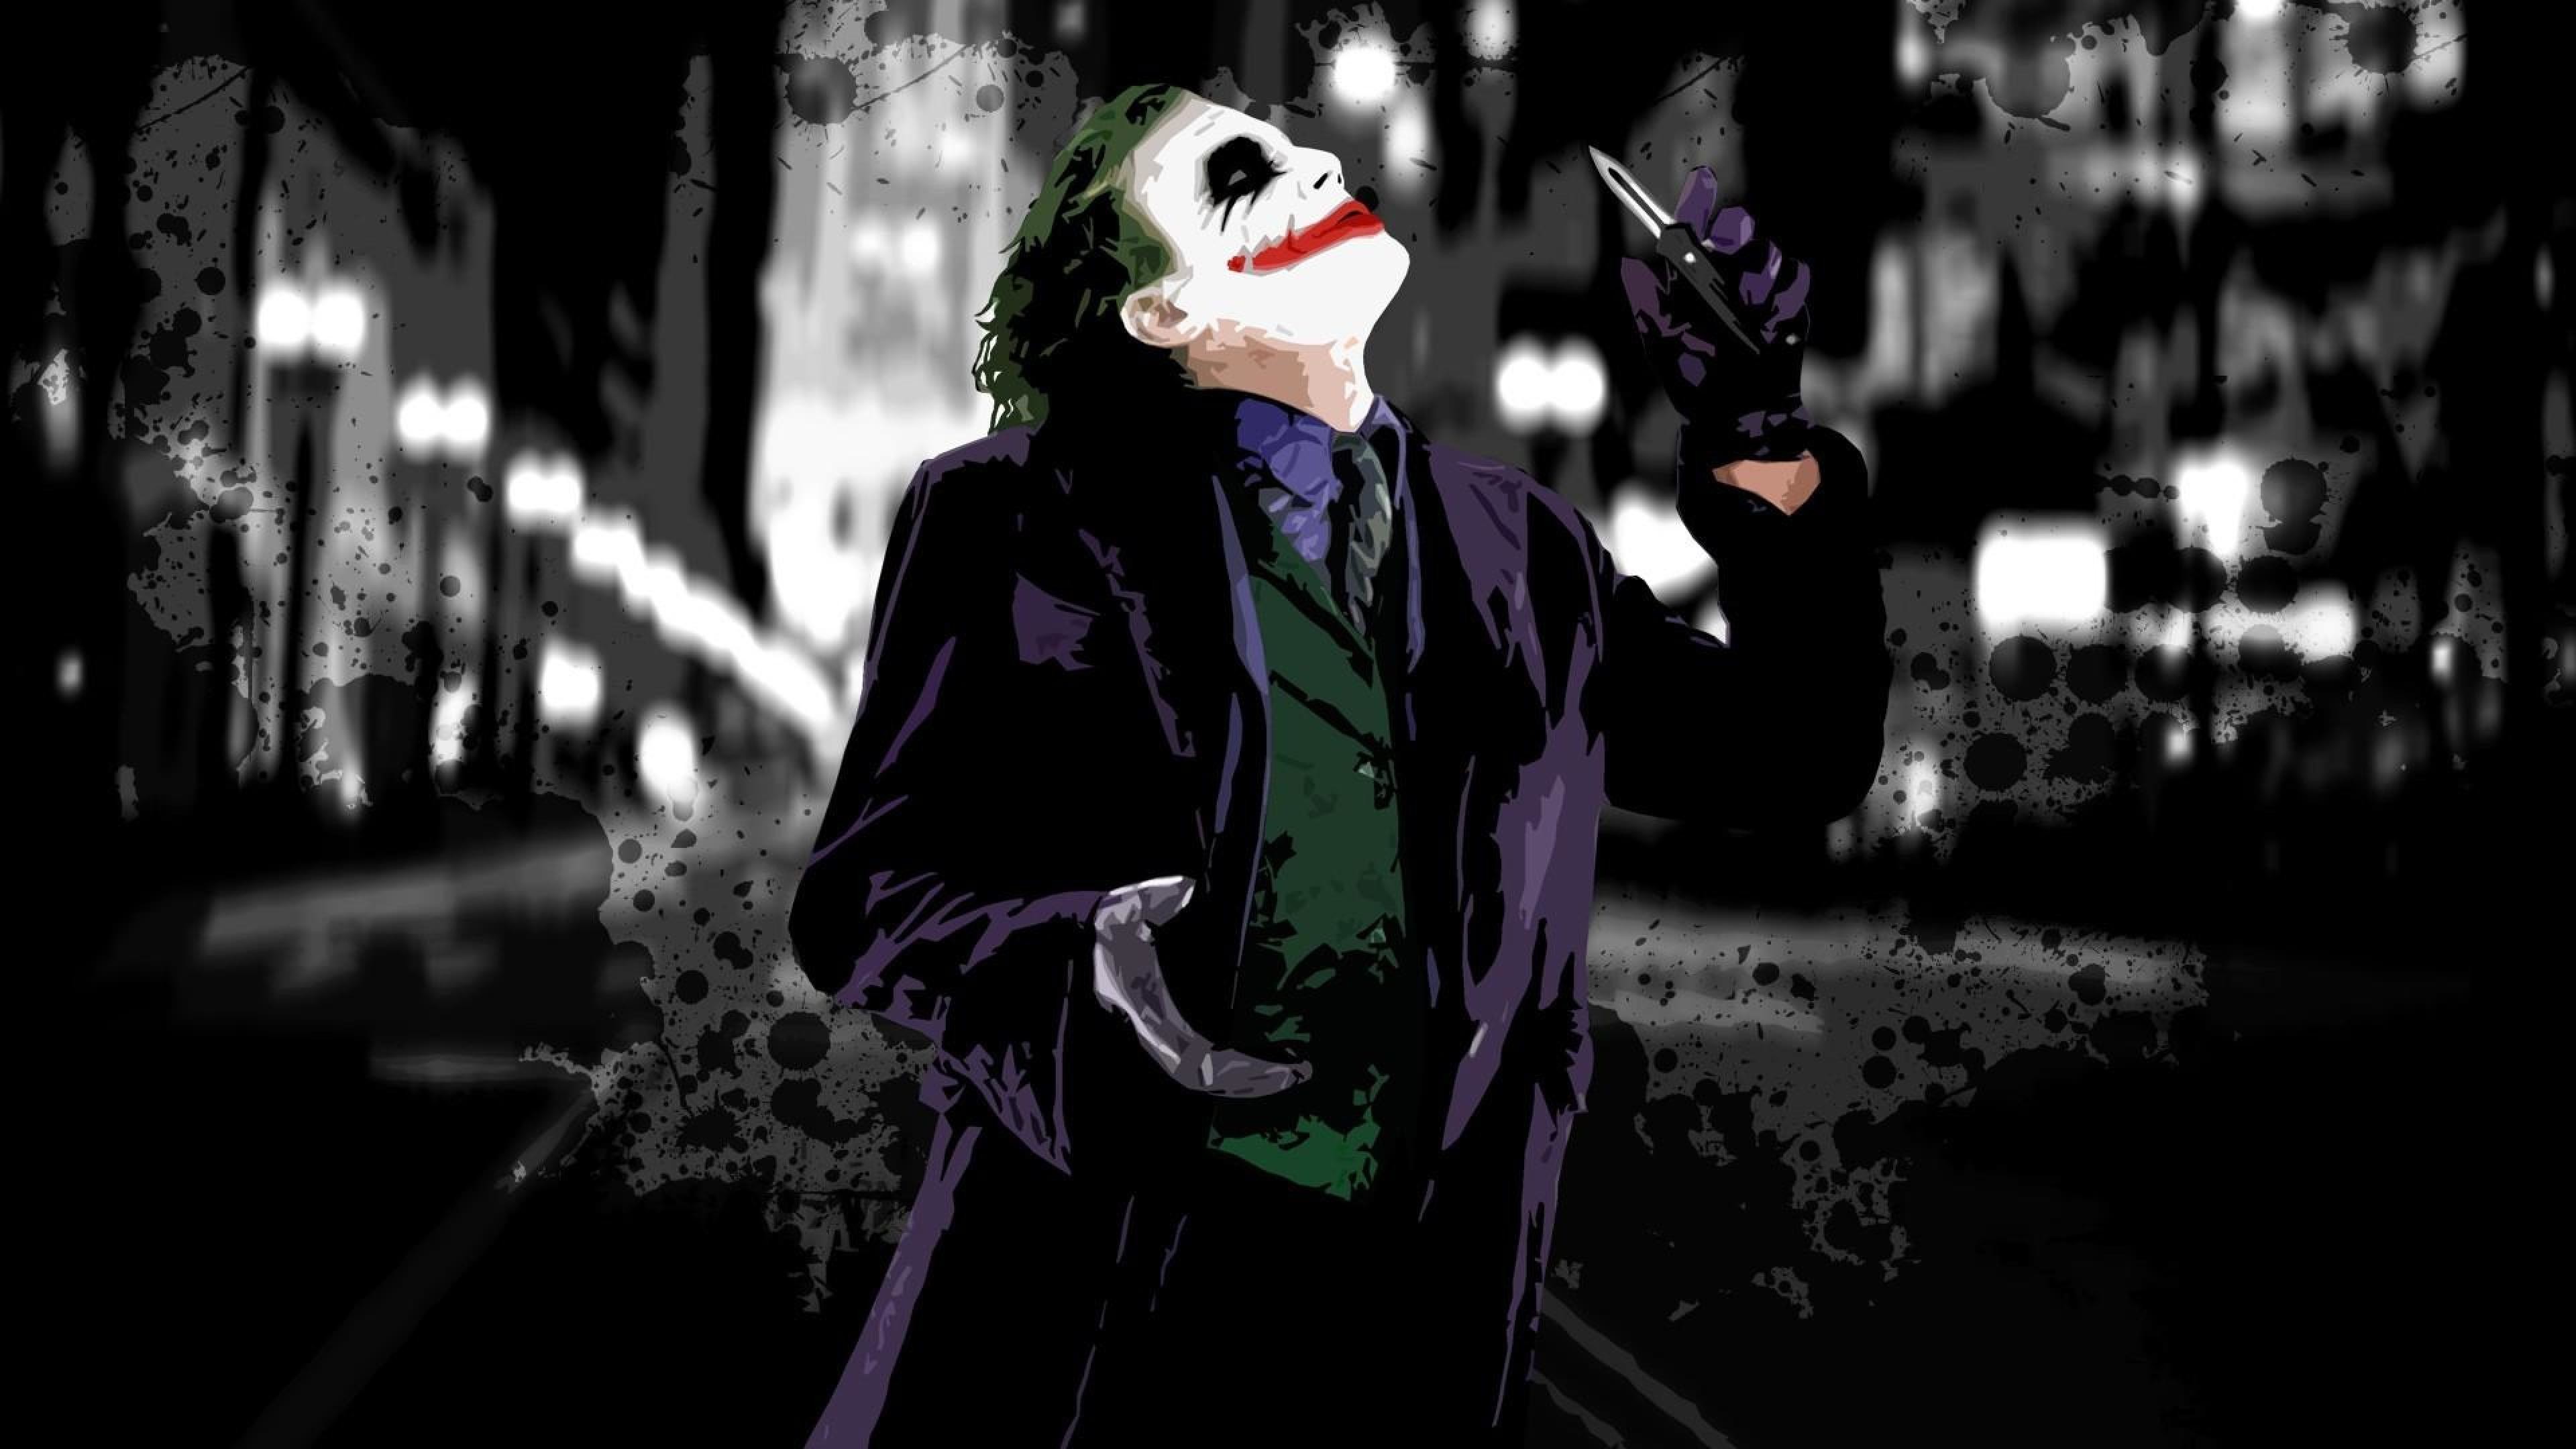 Dark Knight Joker Wallpaper (73+ images)